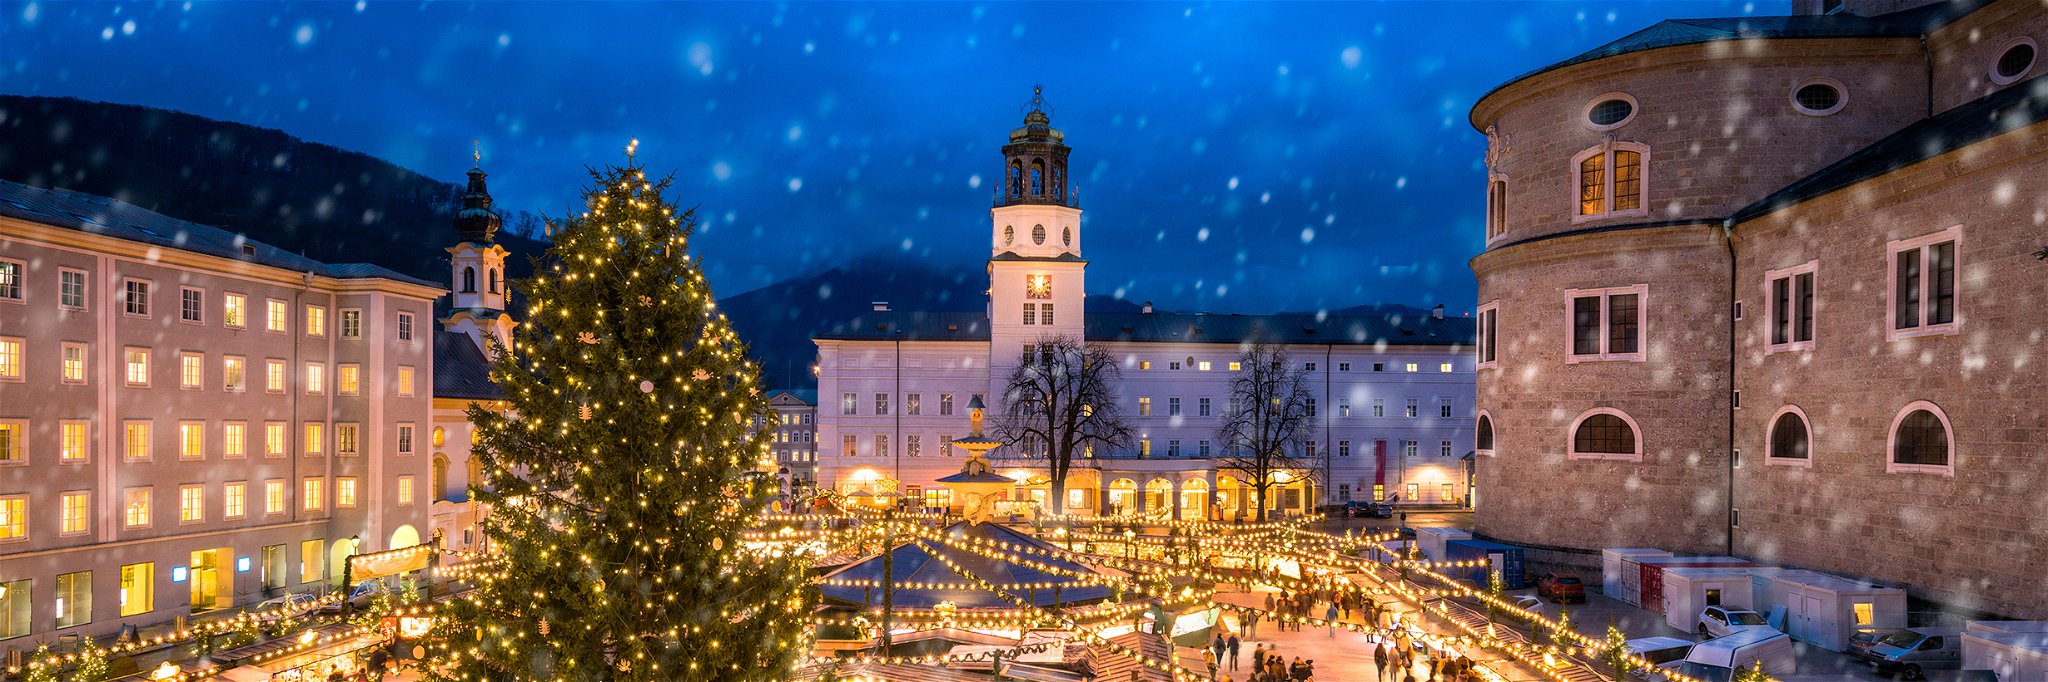 Christmas market in Salzburg, Austria.